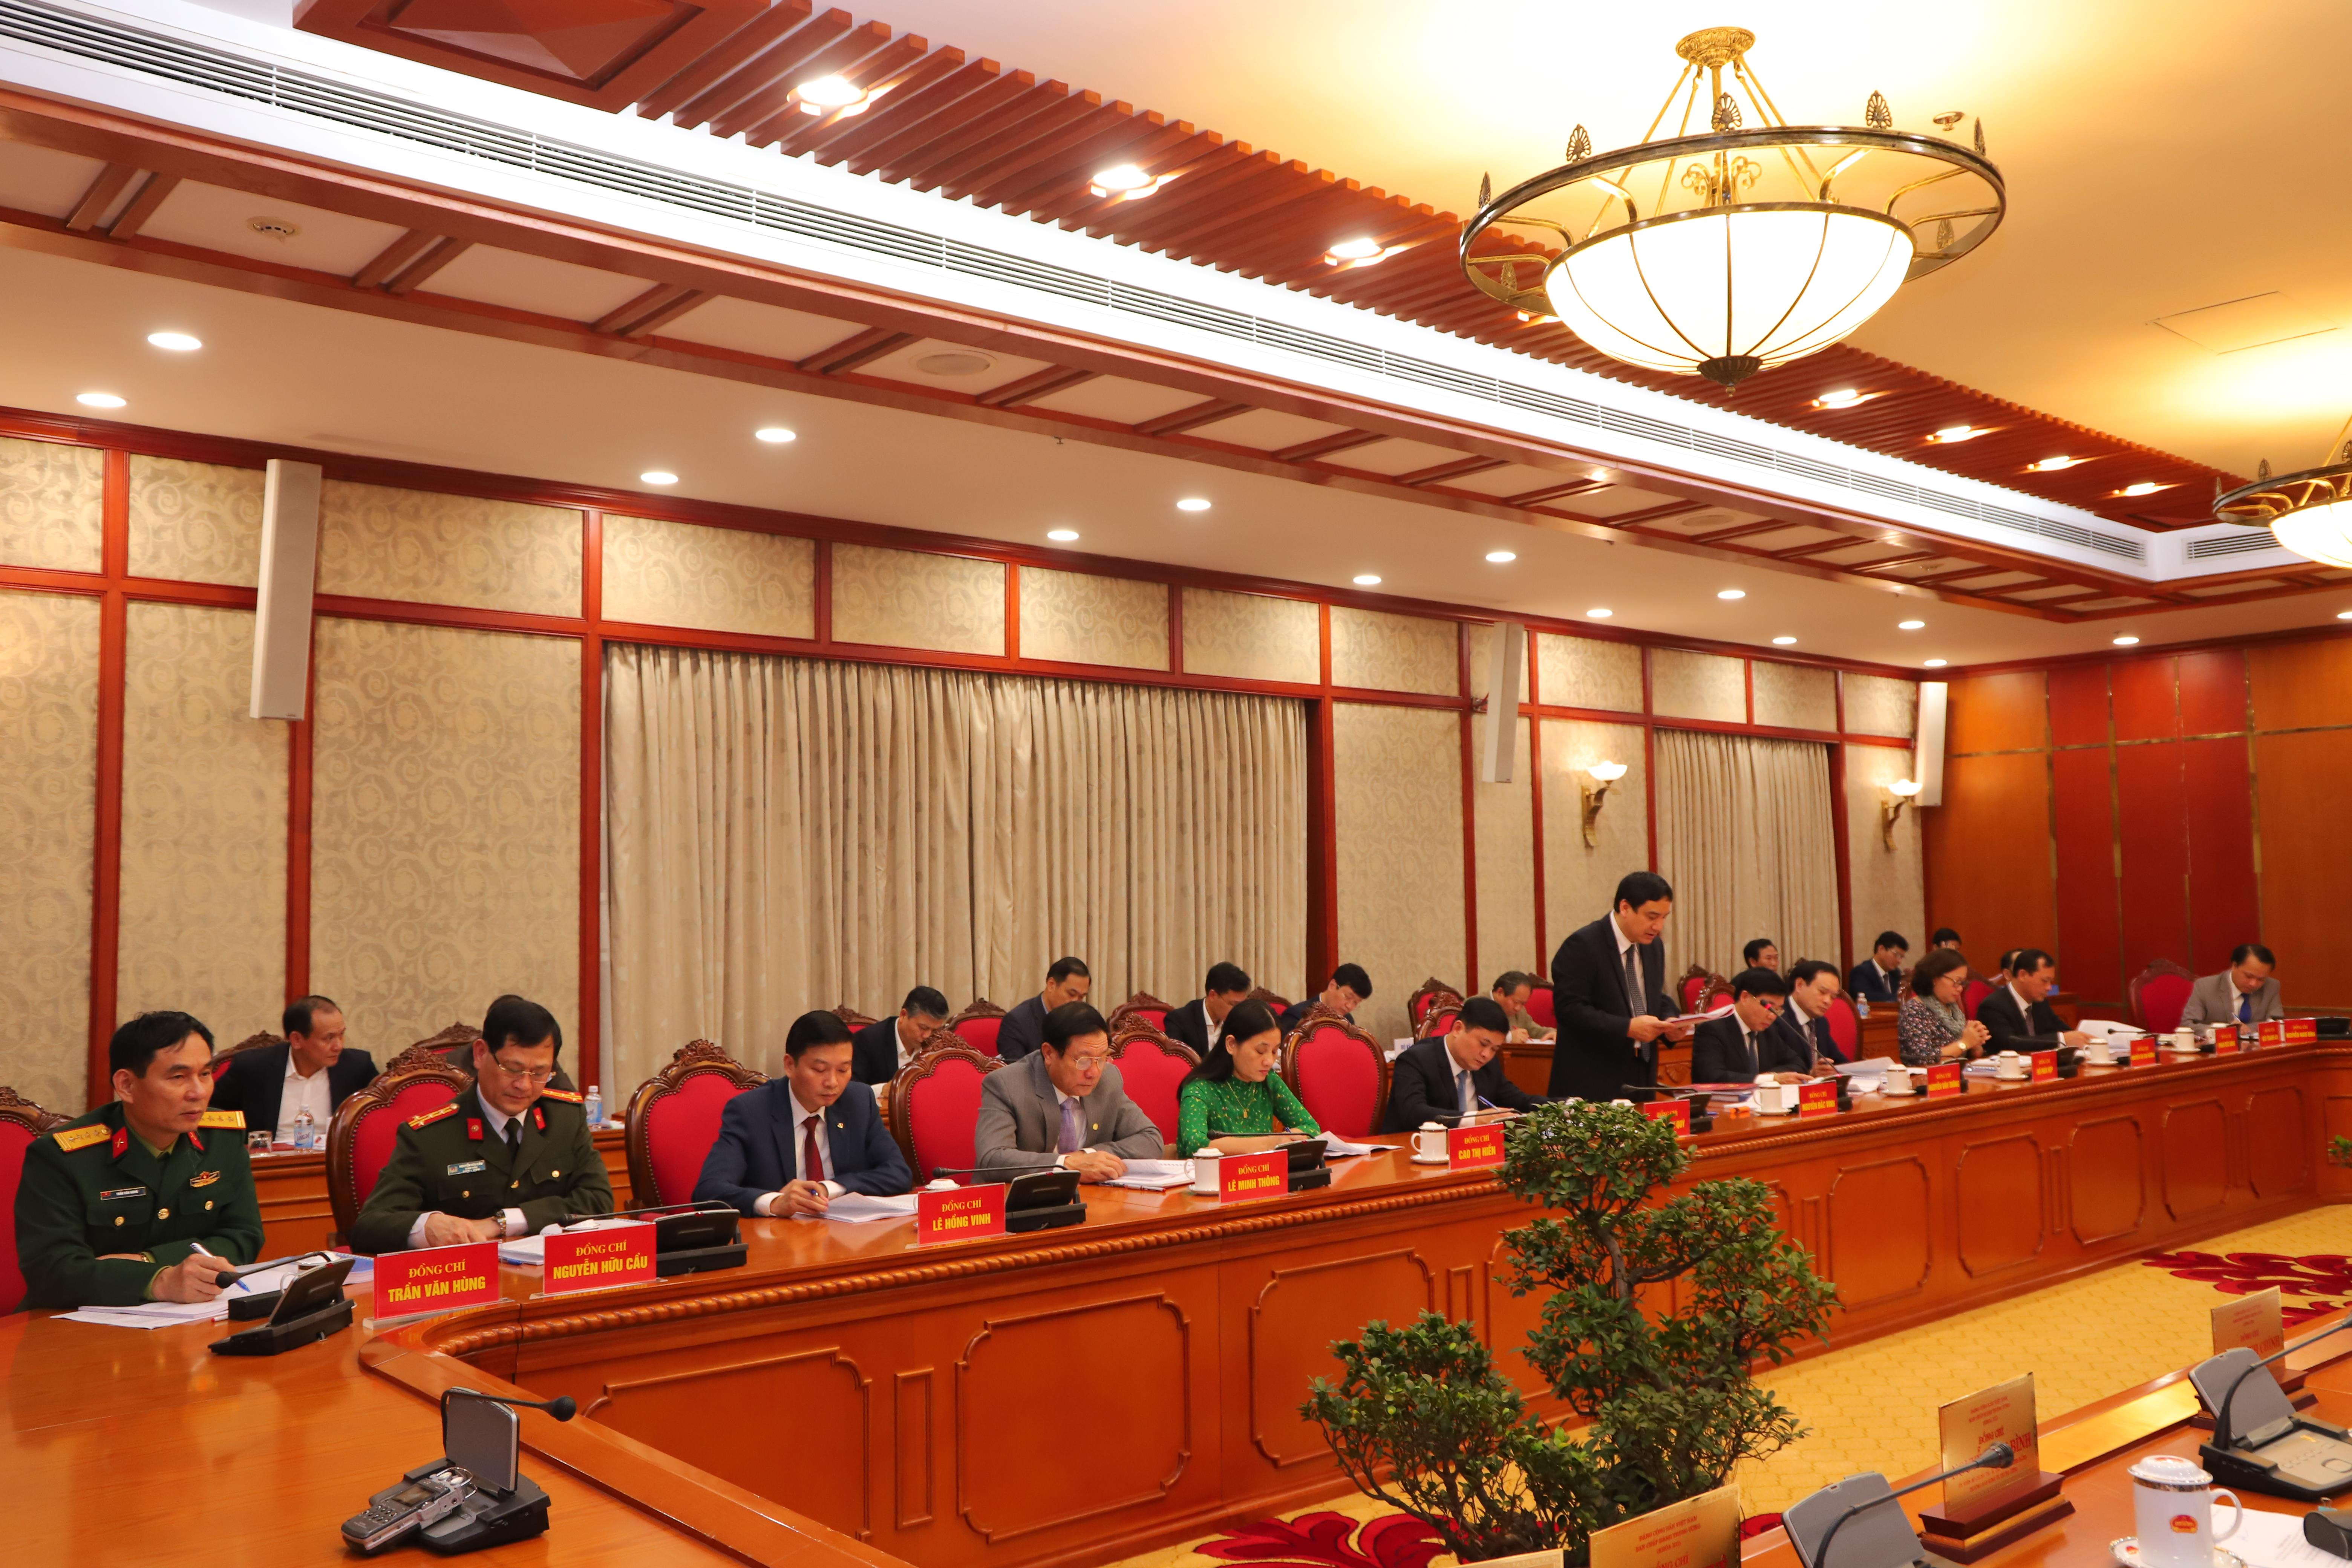 Các đồng chí lãnh đạo tỉnh Nghệ An tham dự buổi làm việc. Ảnh: Đức Chuyên.